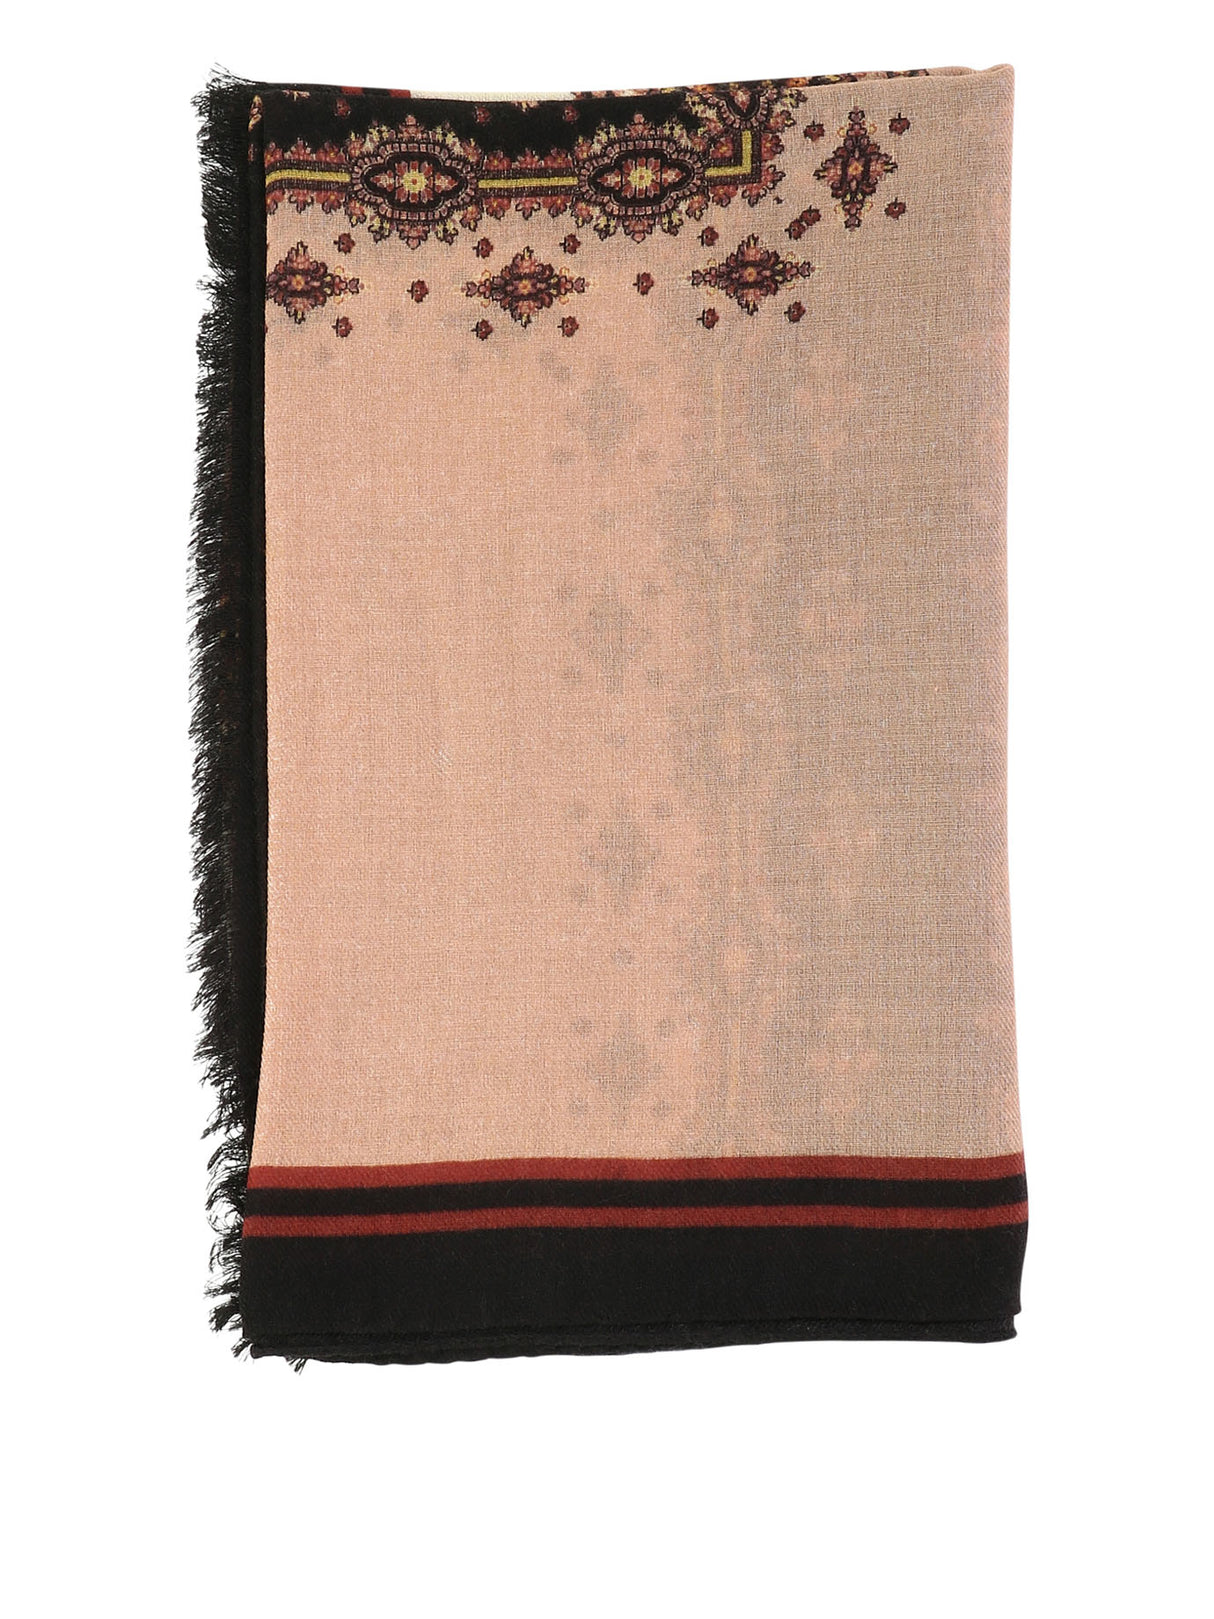 黑色印花围巾带丝带和小圆点，边框有实色装饰